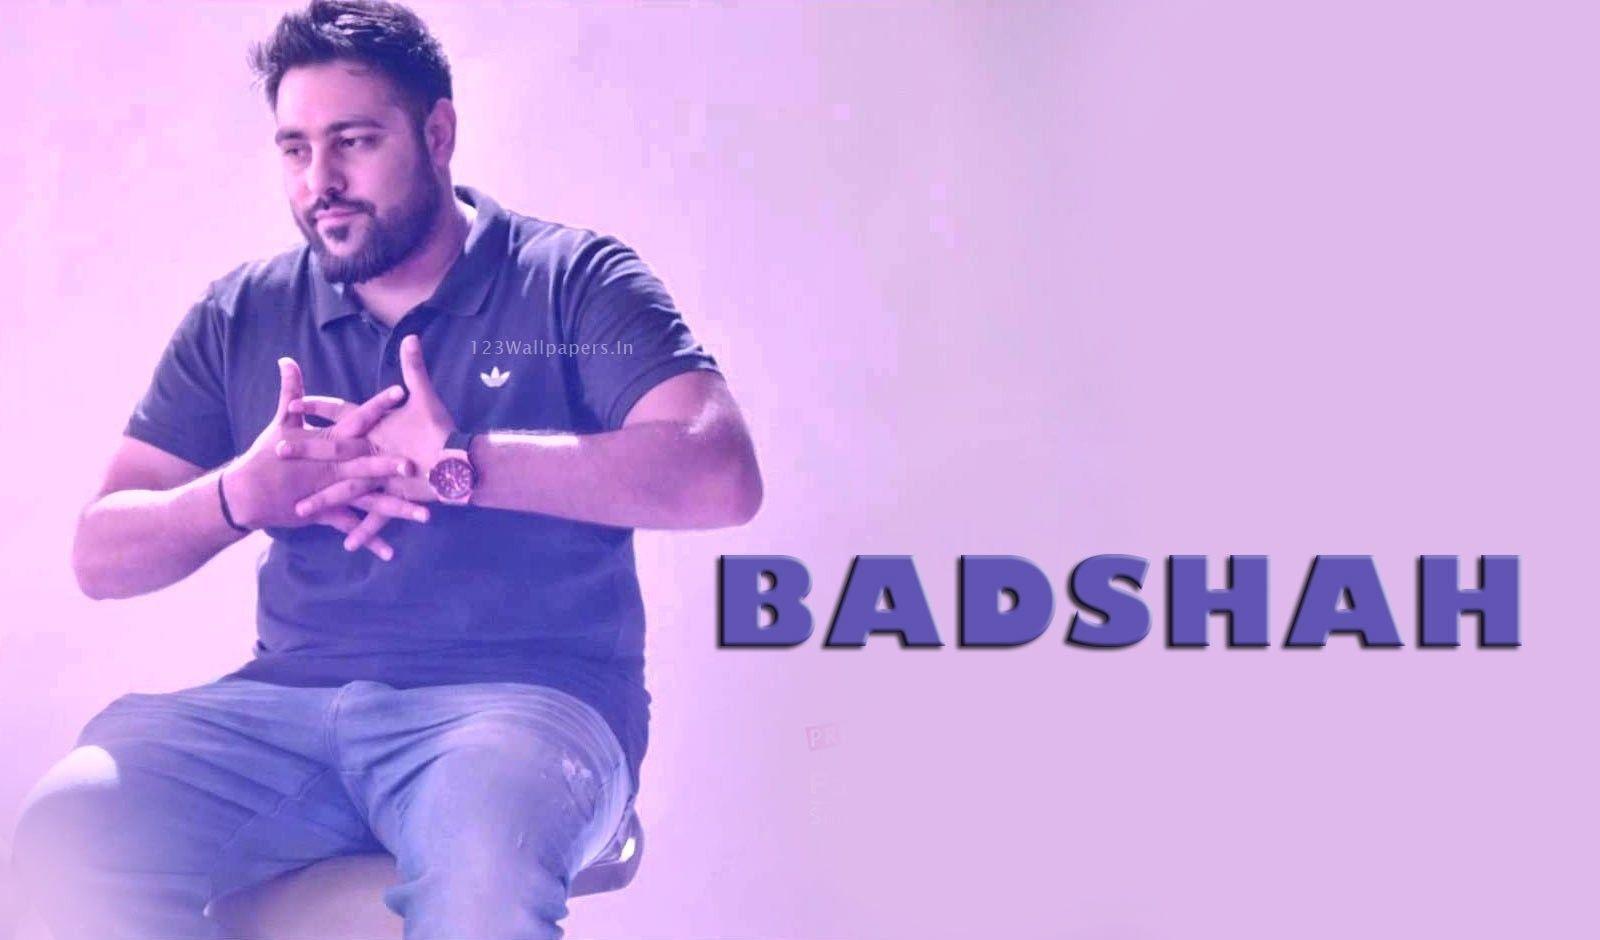 Badshah Picture, Image. Badshah rapper